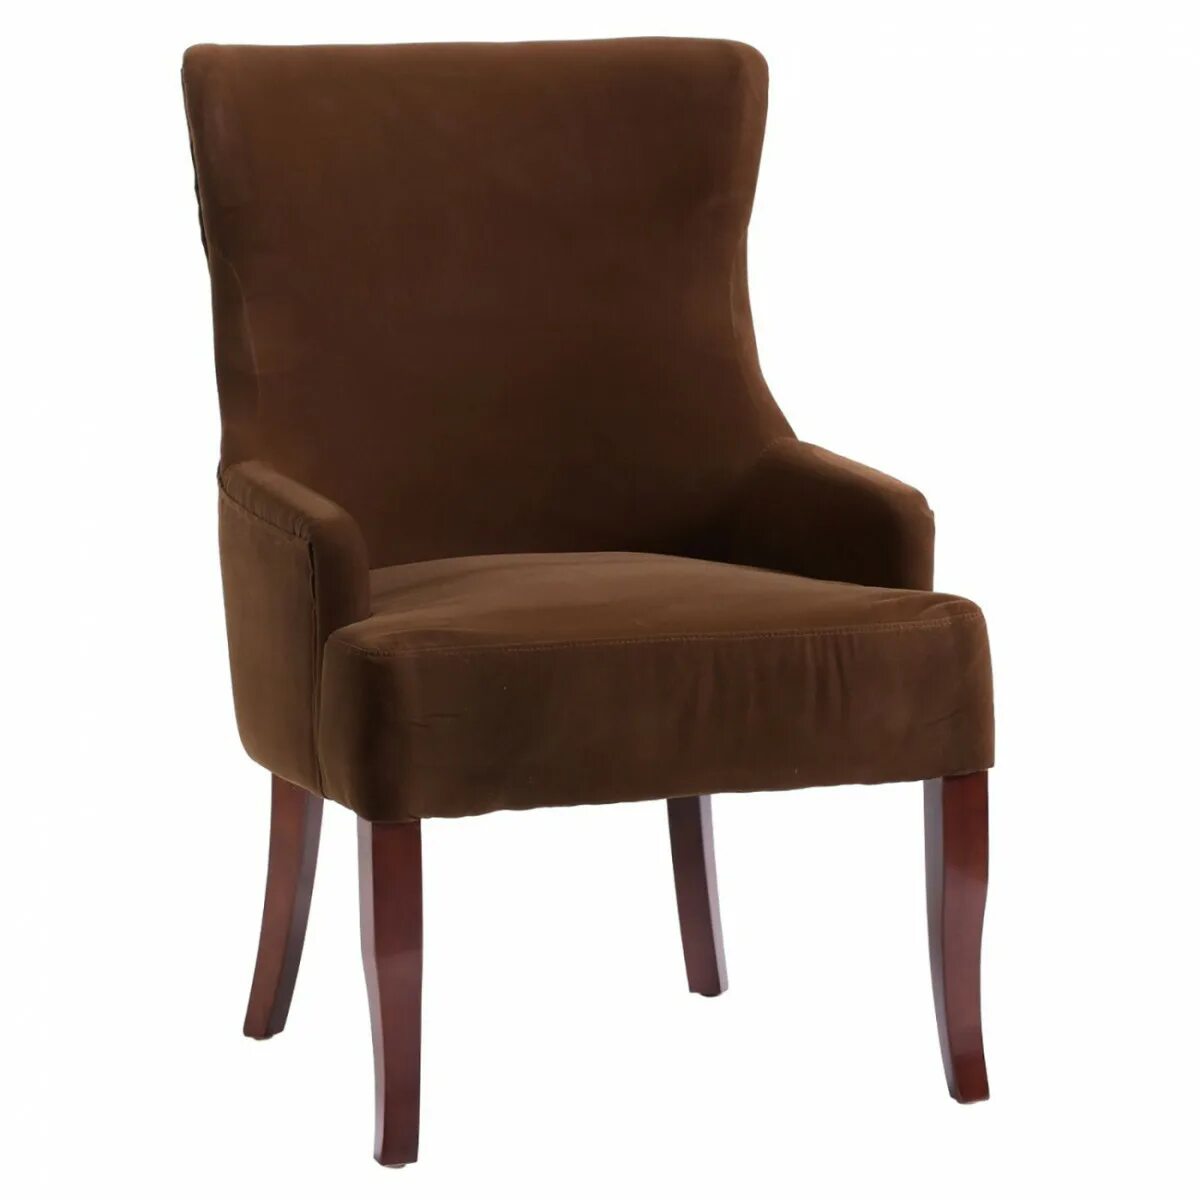 Chairs brown. Стул Альдо. Кресло коричневое мягкое. Стул коричневый. Стул коричневый велюр.